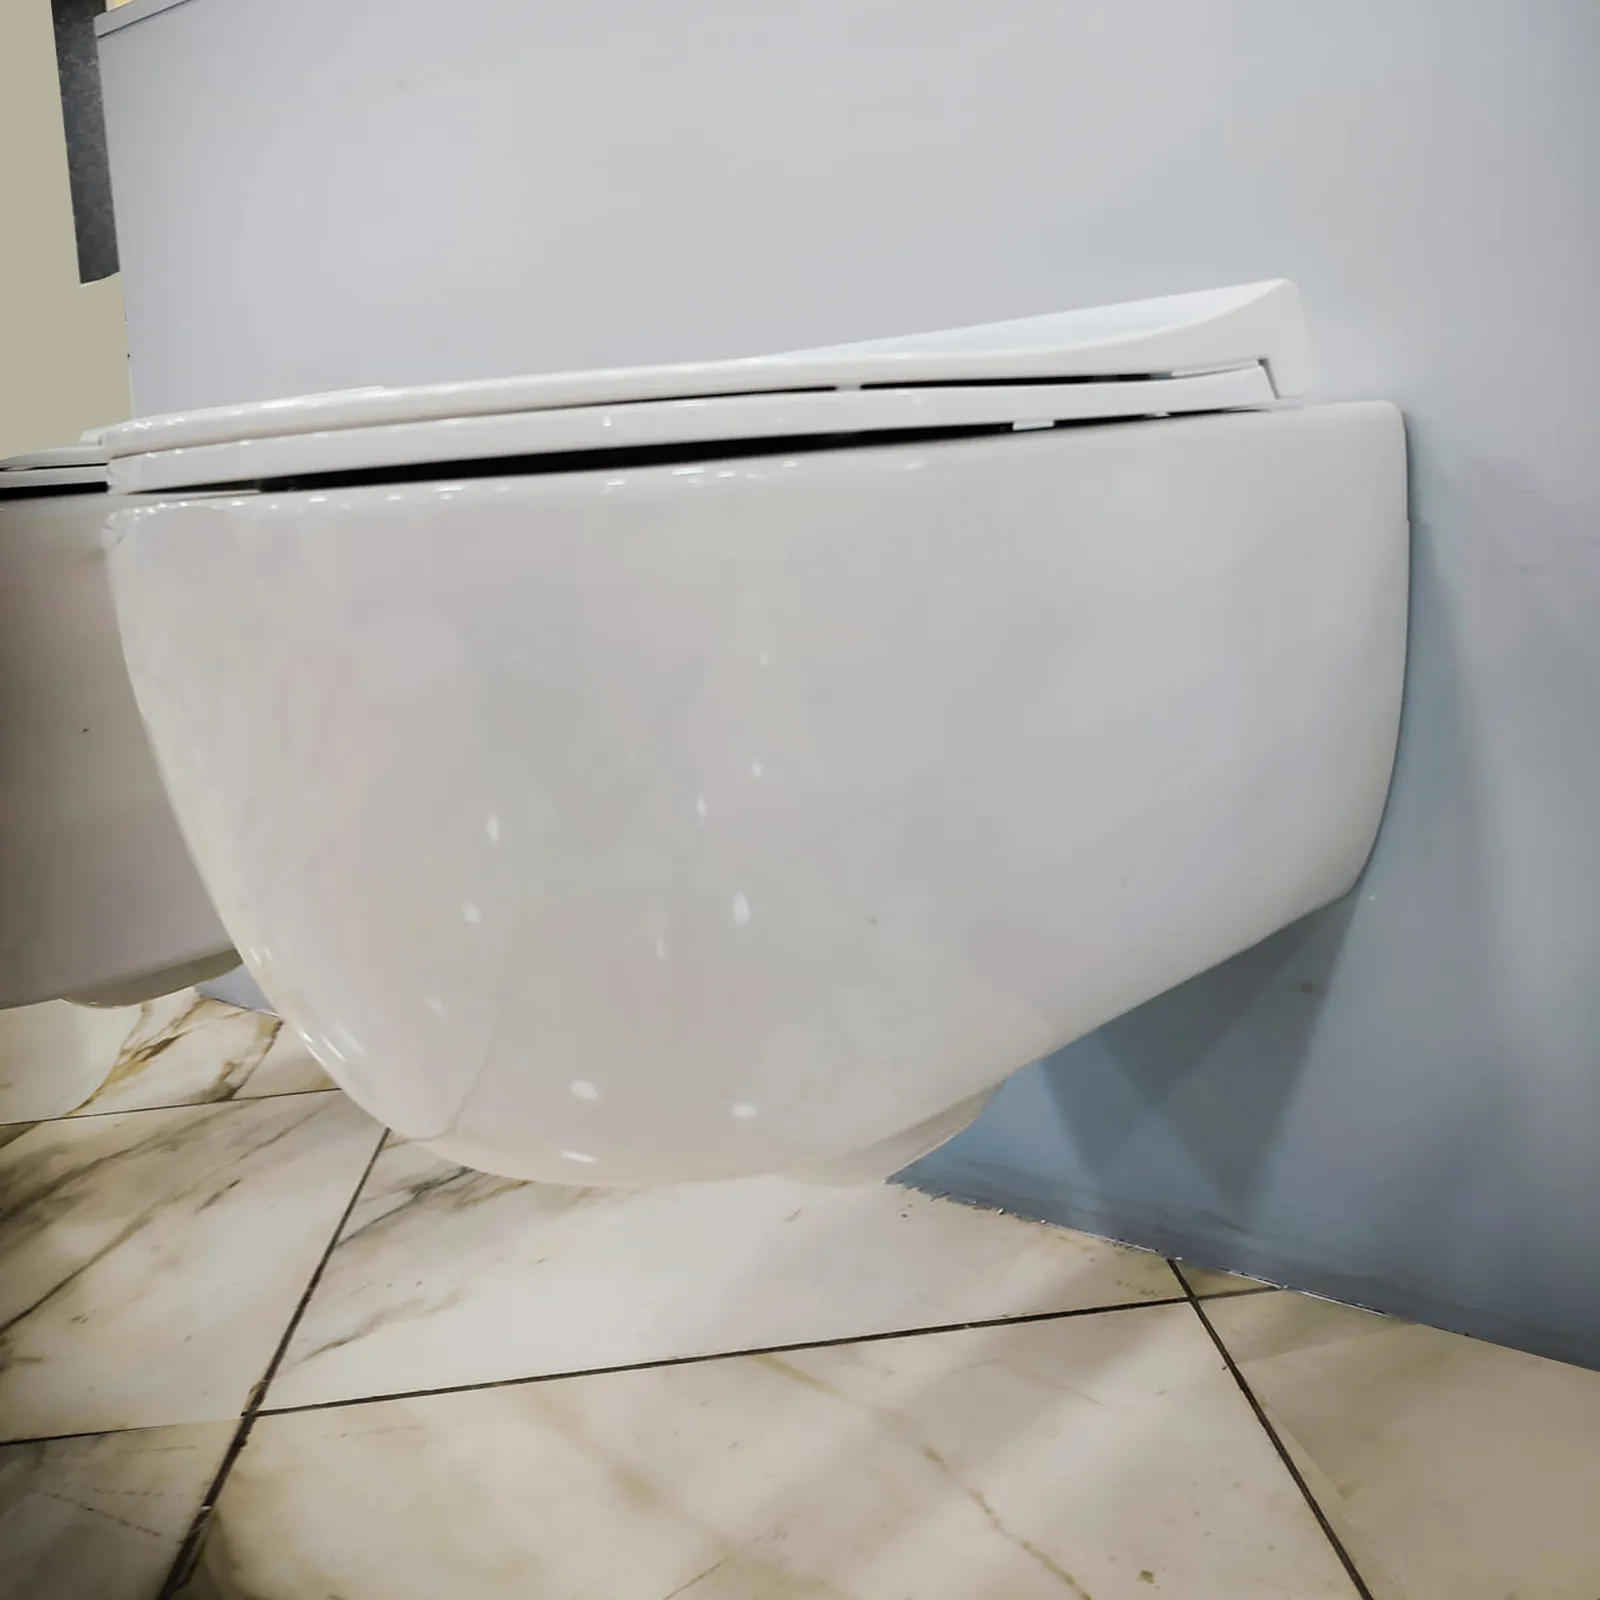 Maison sanitaire maisons préfabriquées wc jante chasse placard commode citerne cachée toilette paquet modulaire toilette bassin unités inodoro